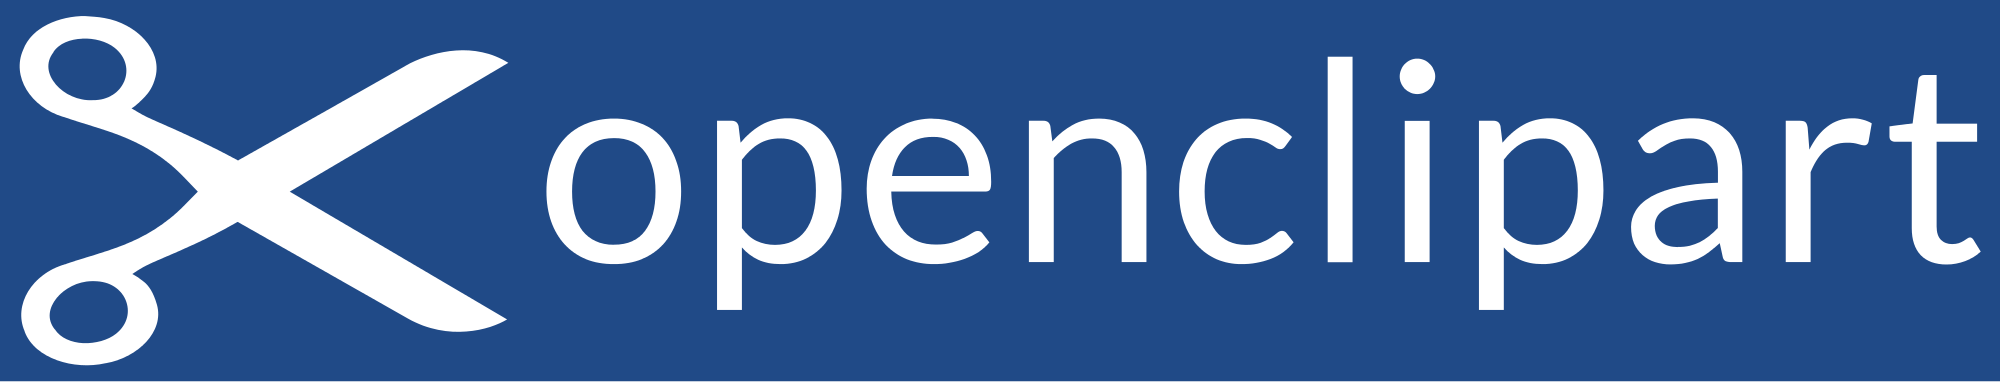 Opening logo. OPENAL логотип. Open clip Art. Открытие logo PNG. Открытые данные России логотип.